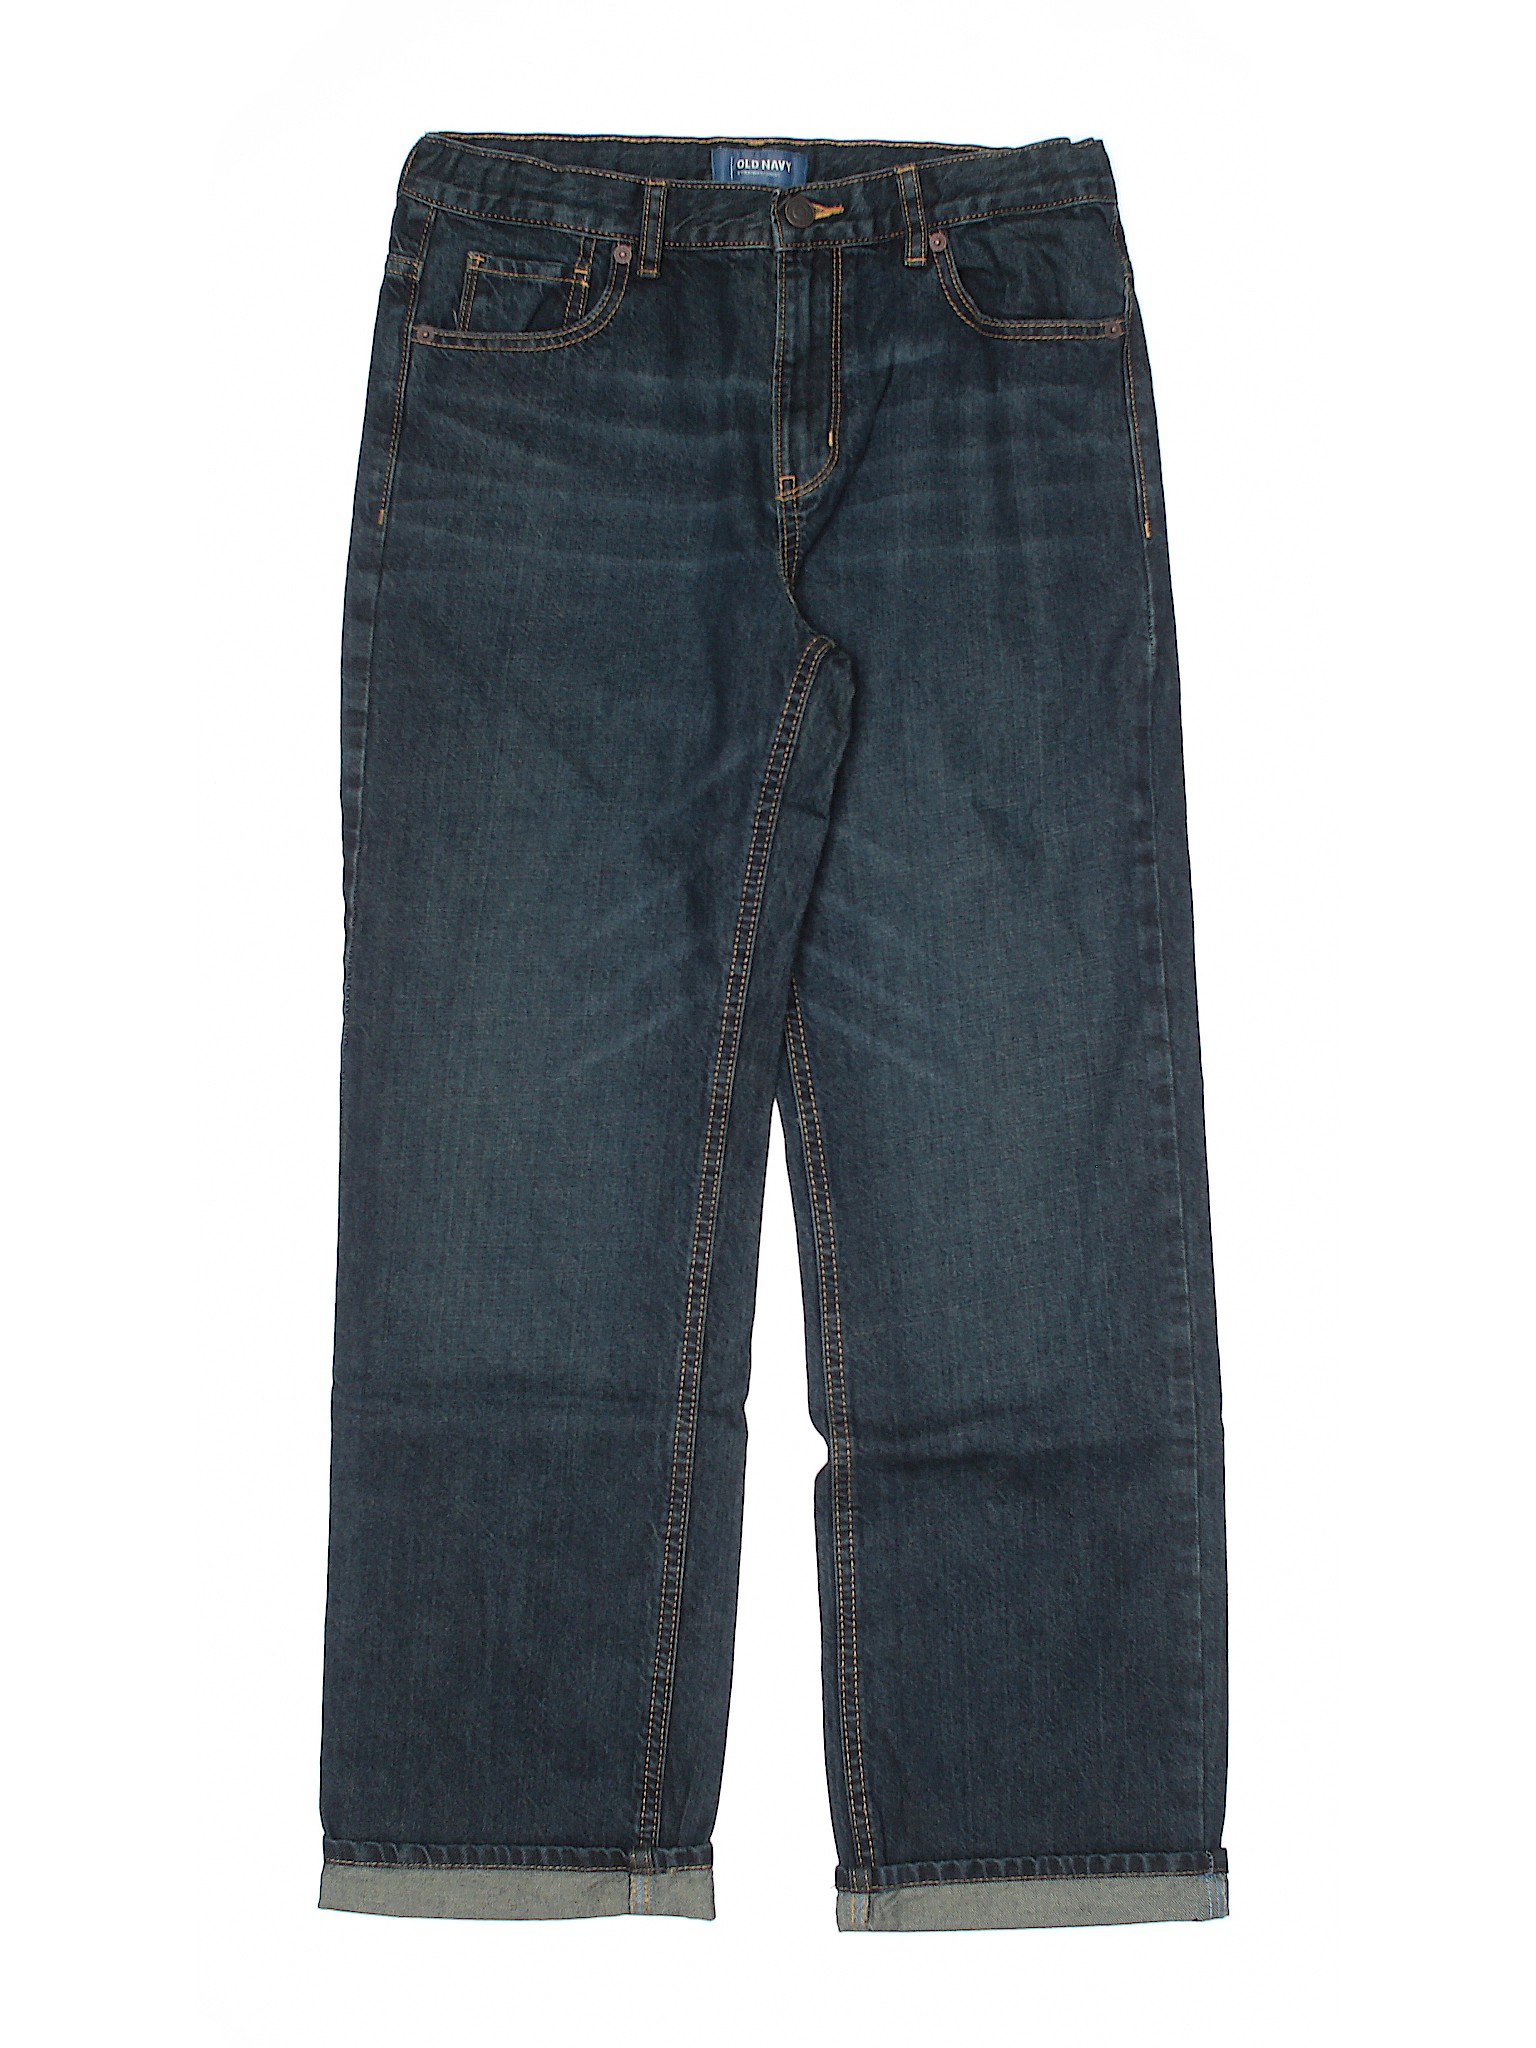 Old Navy Boys Blue Jeans 16 | eBay